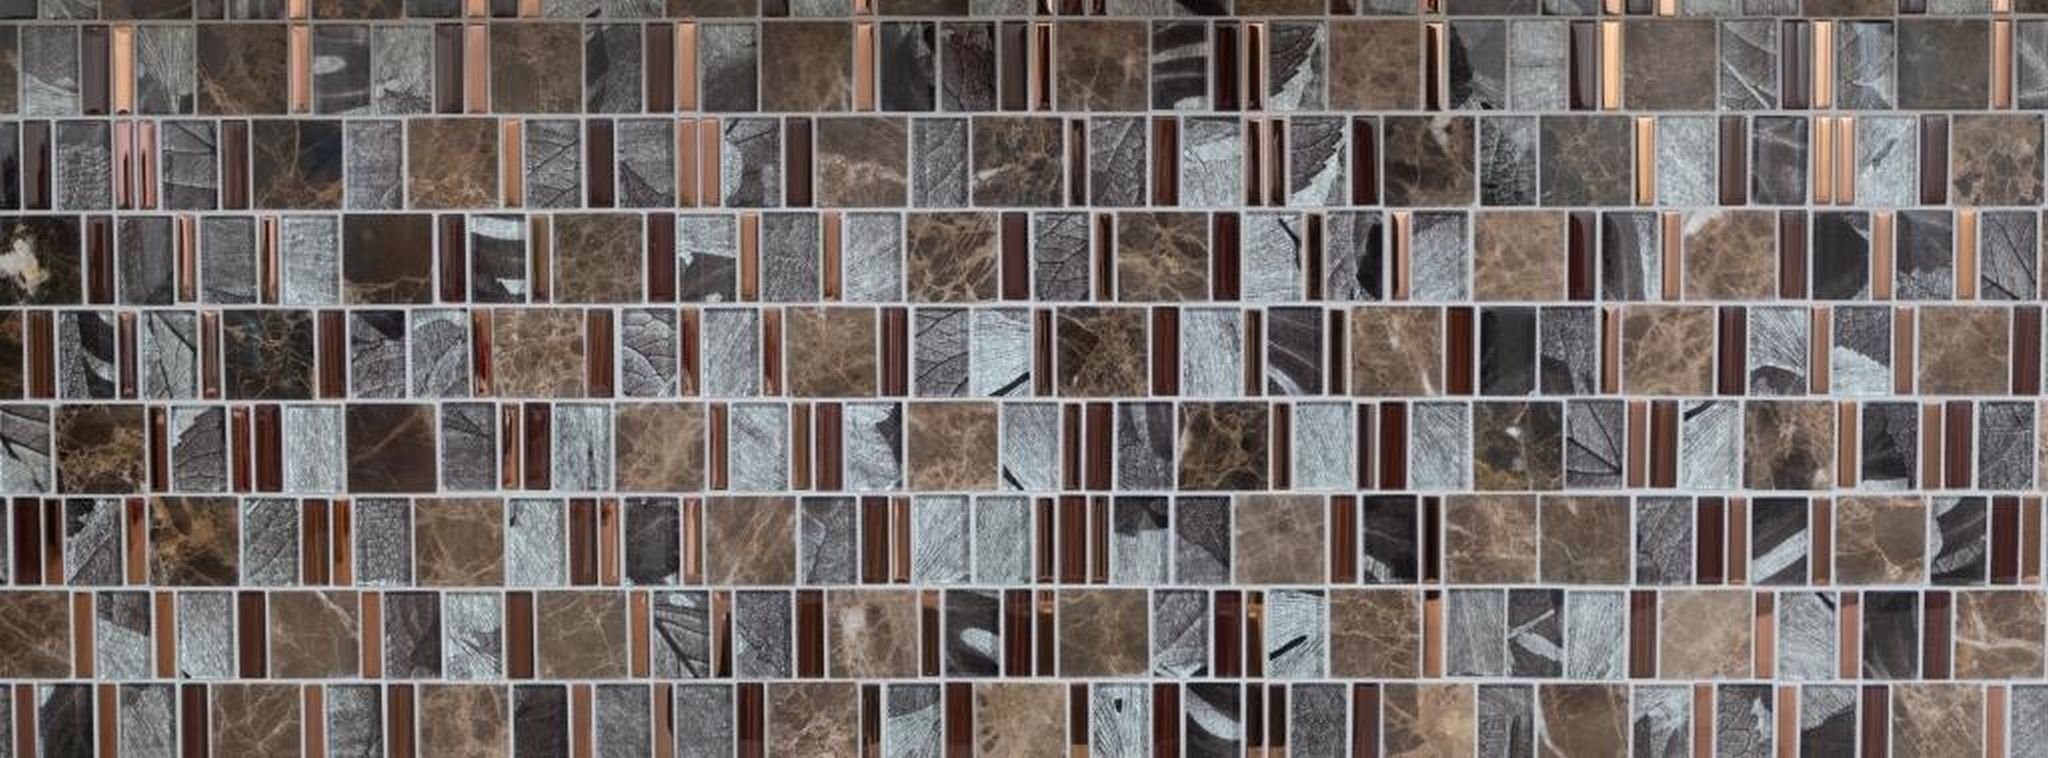 Marmor Mosaikfliesen Mosani Mosaikfliesen braun Glasmosaik grau kupfer